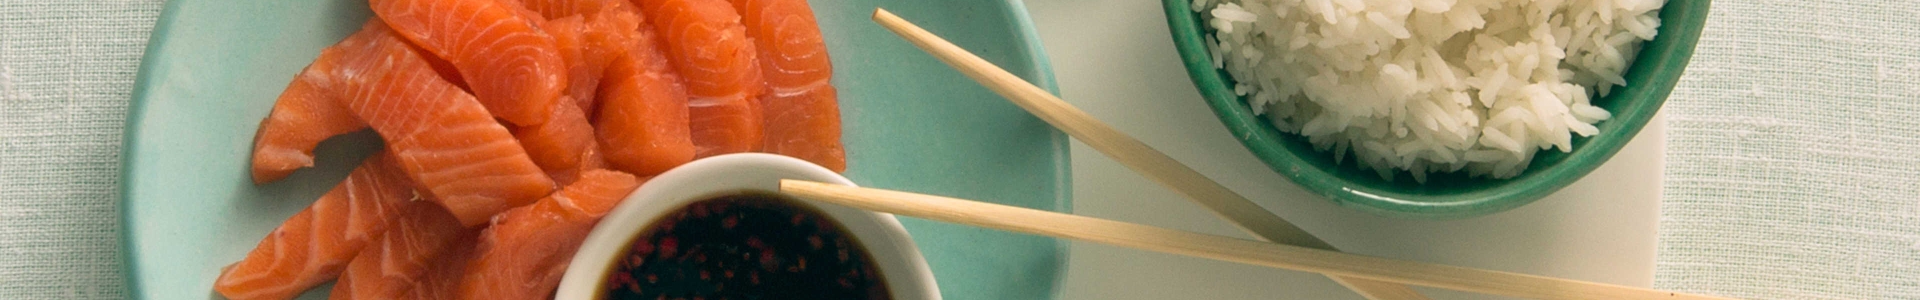 Сашимі з лосося із соусом